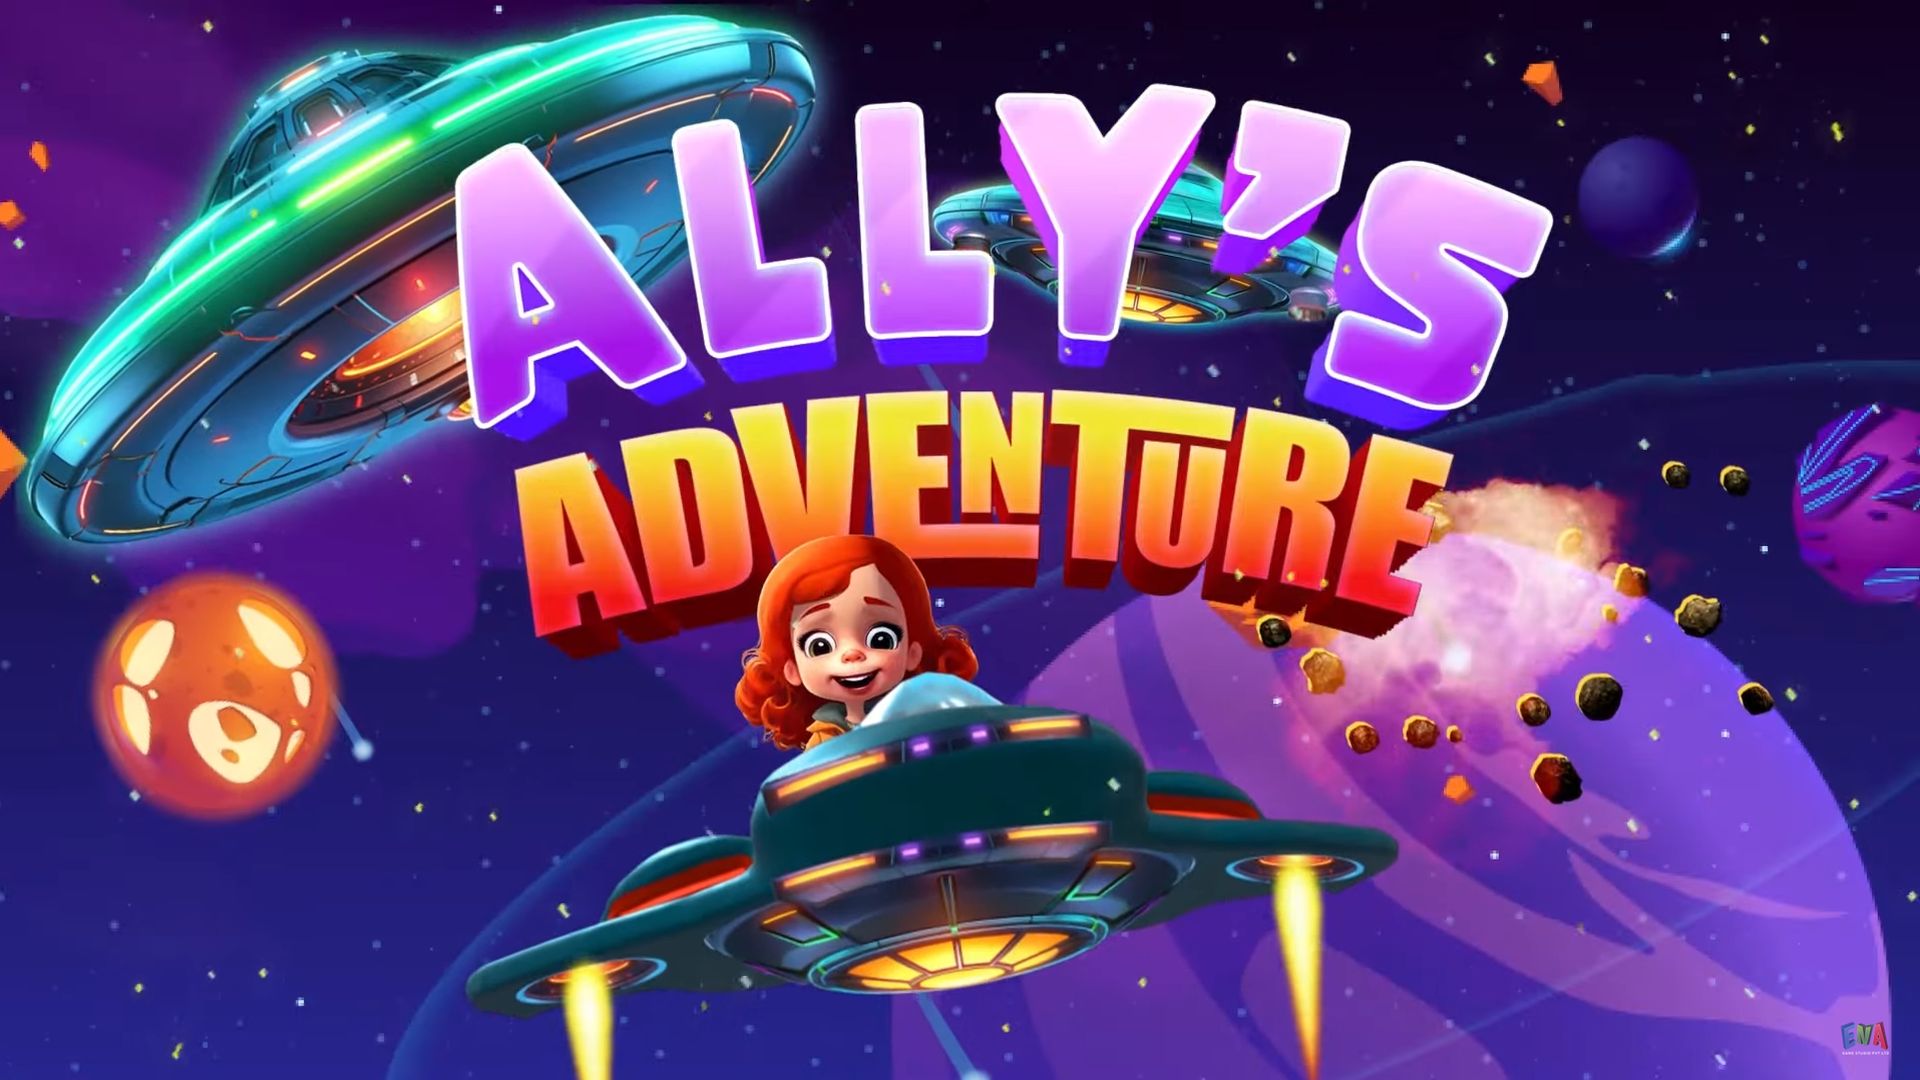 Escape Room - Ally's adventure walkthrough image